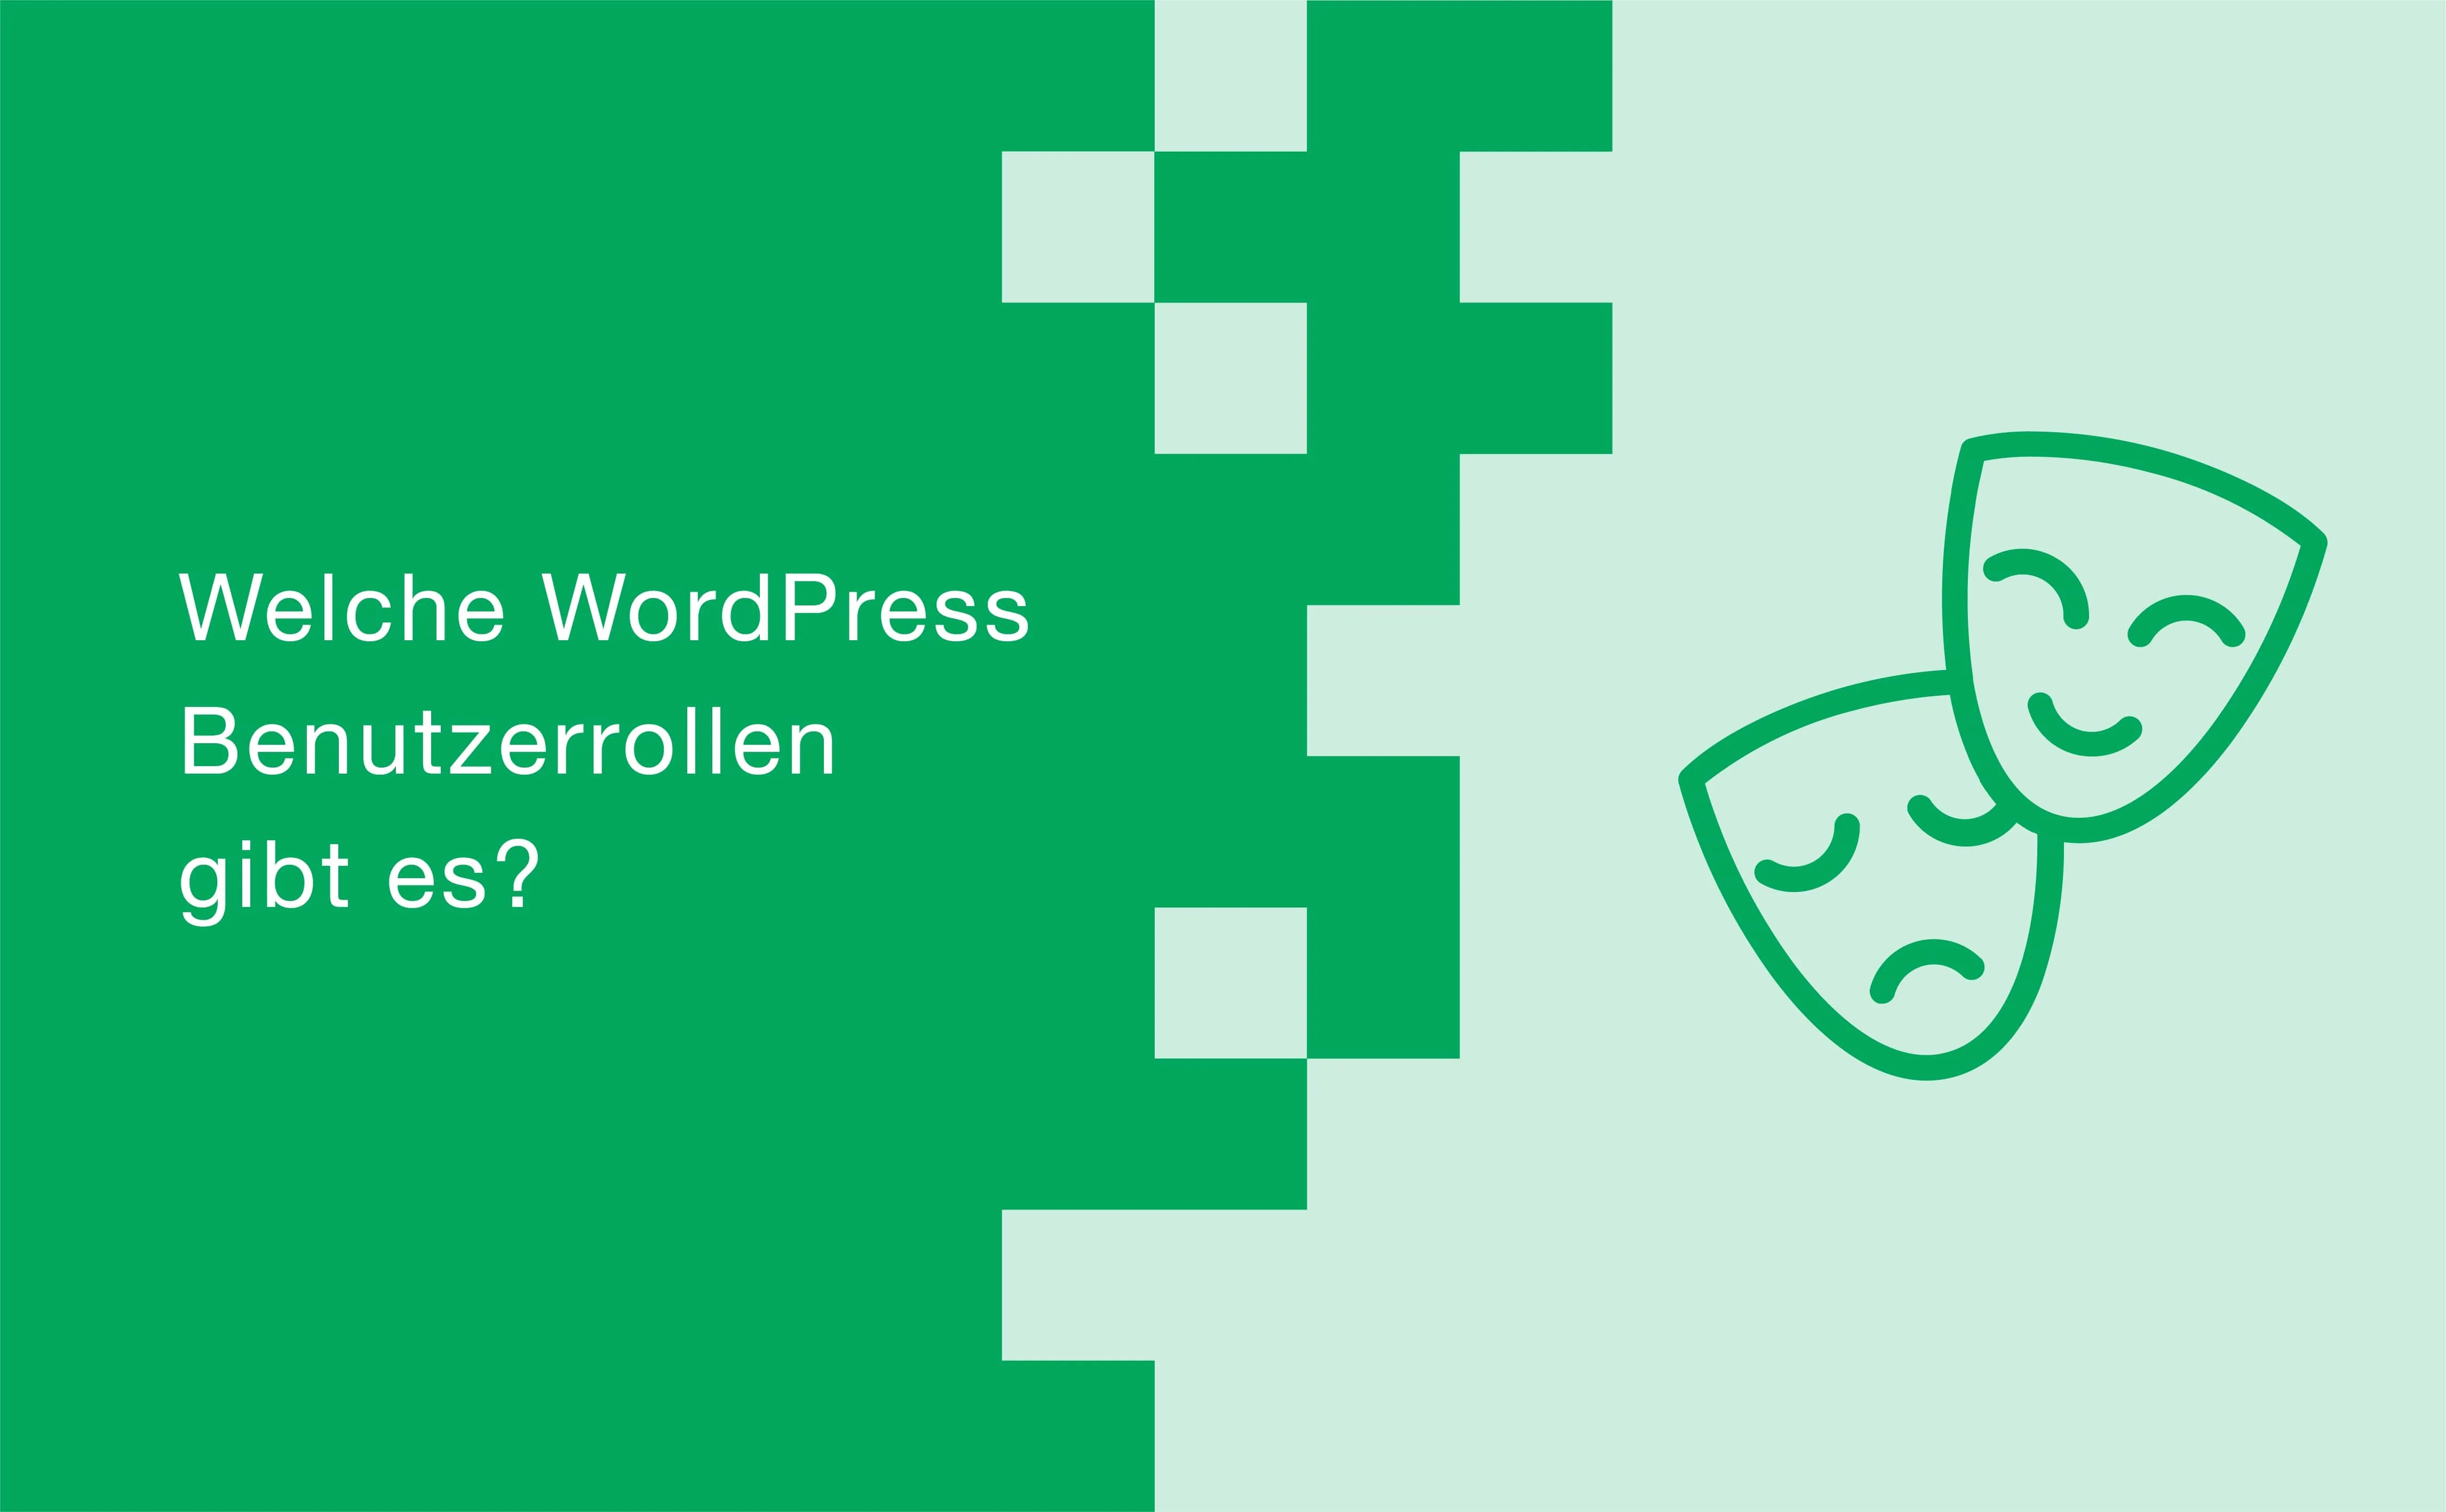 Welche WordPress Benutzerrollen gibt es?